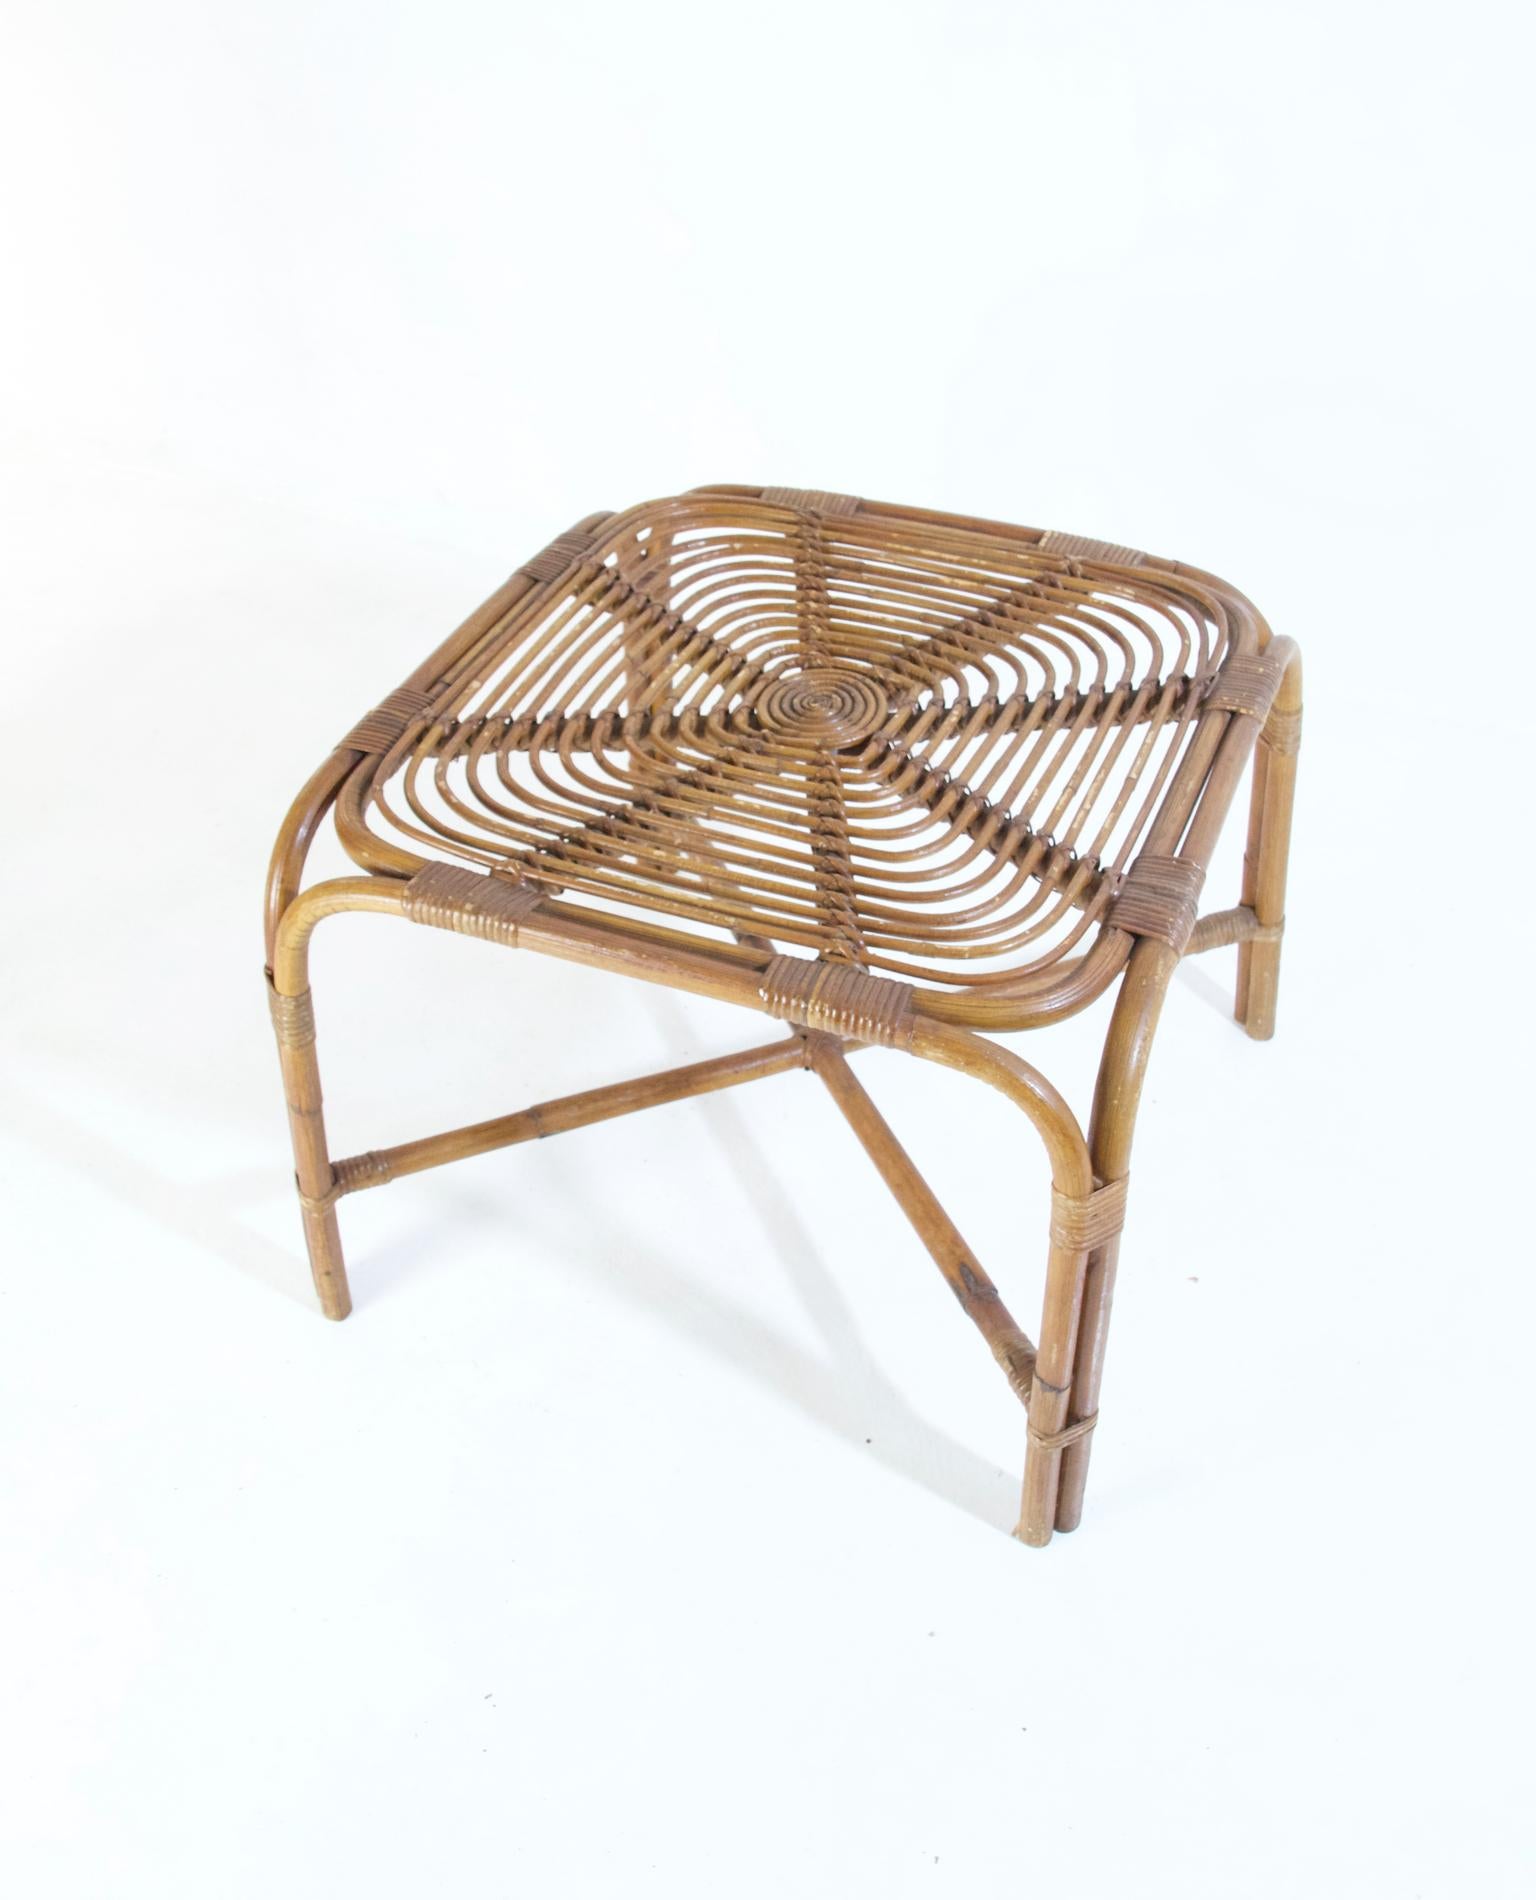 Table basse carrée en bambou dans le style de Franco Albini, Italie. Les chaises sont en très bon état et fonctionnent bien.